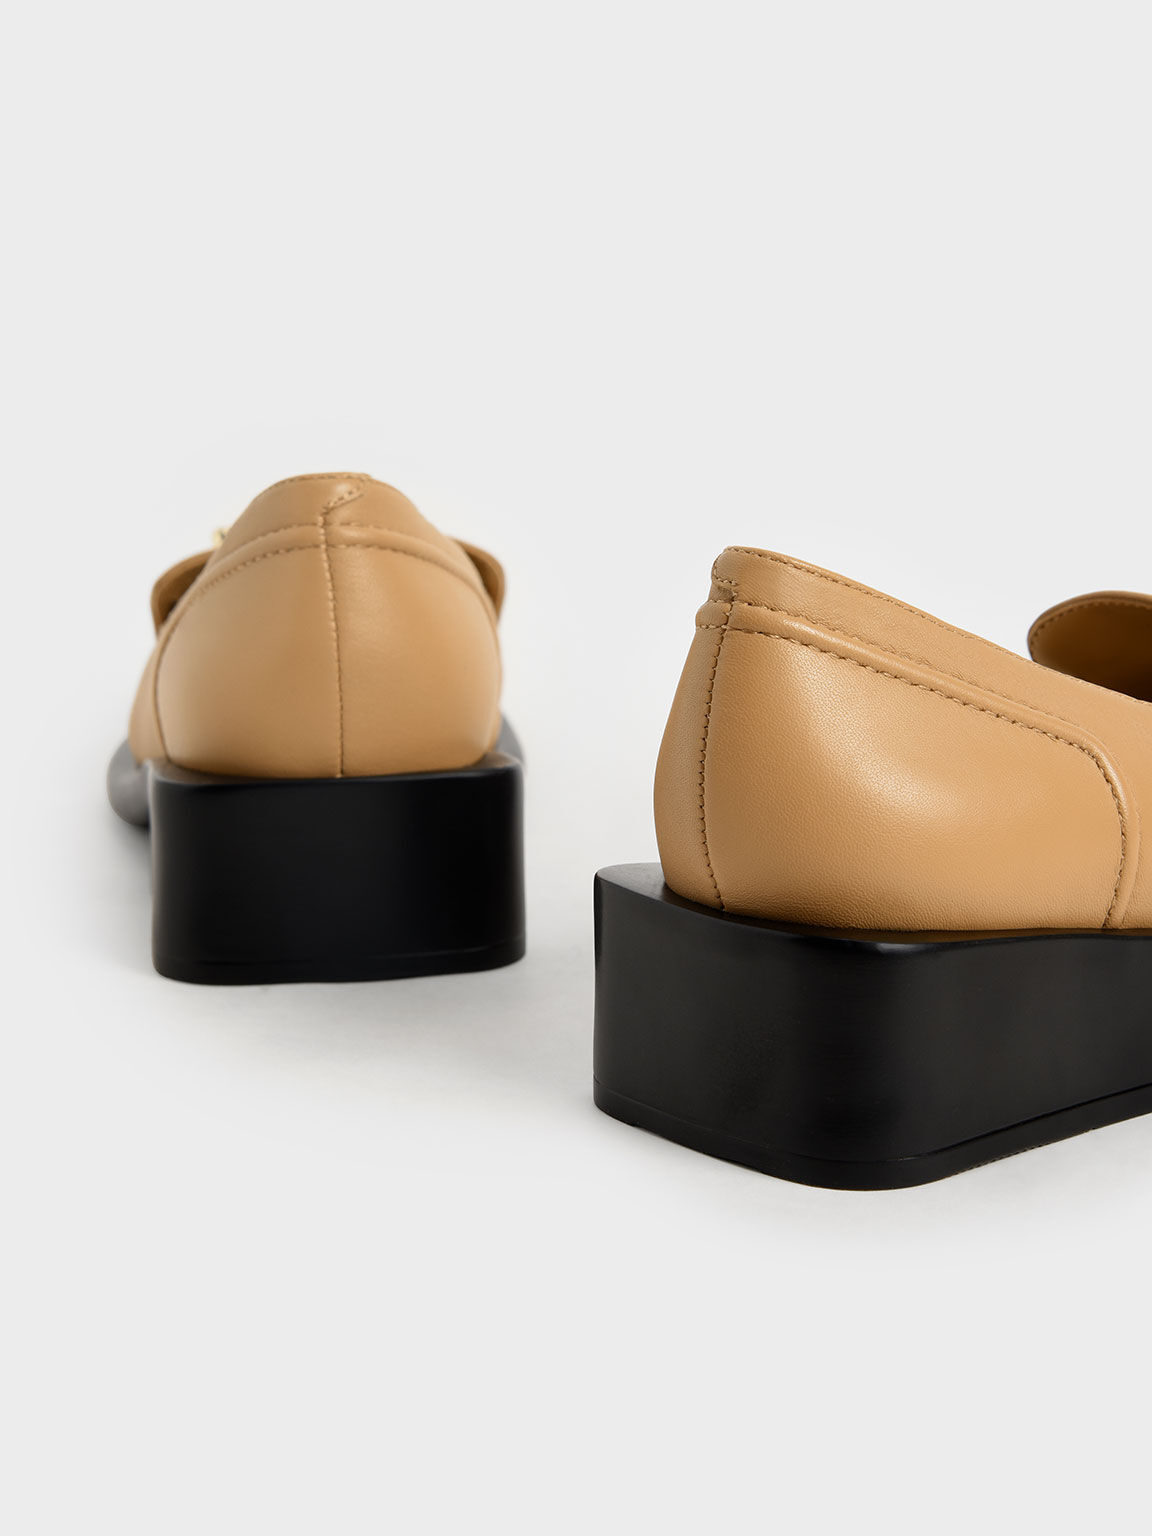 Embellished Leather Loafers, Tan, hi-res